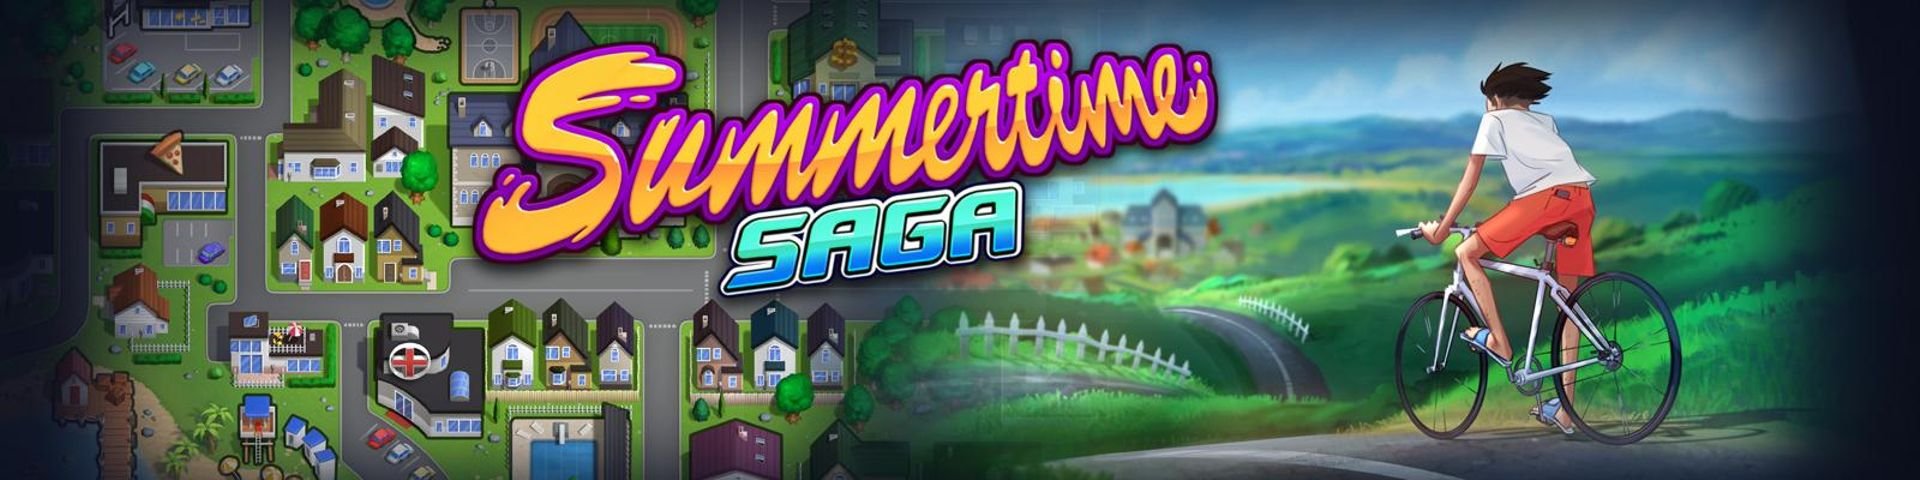 Summertime Saga v0.14.1 is out!